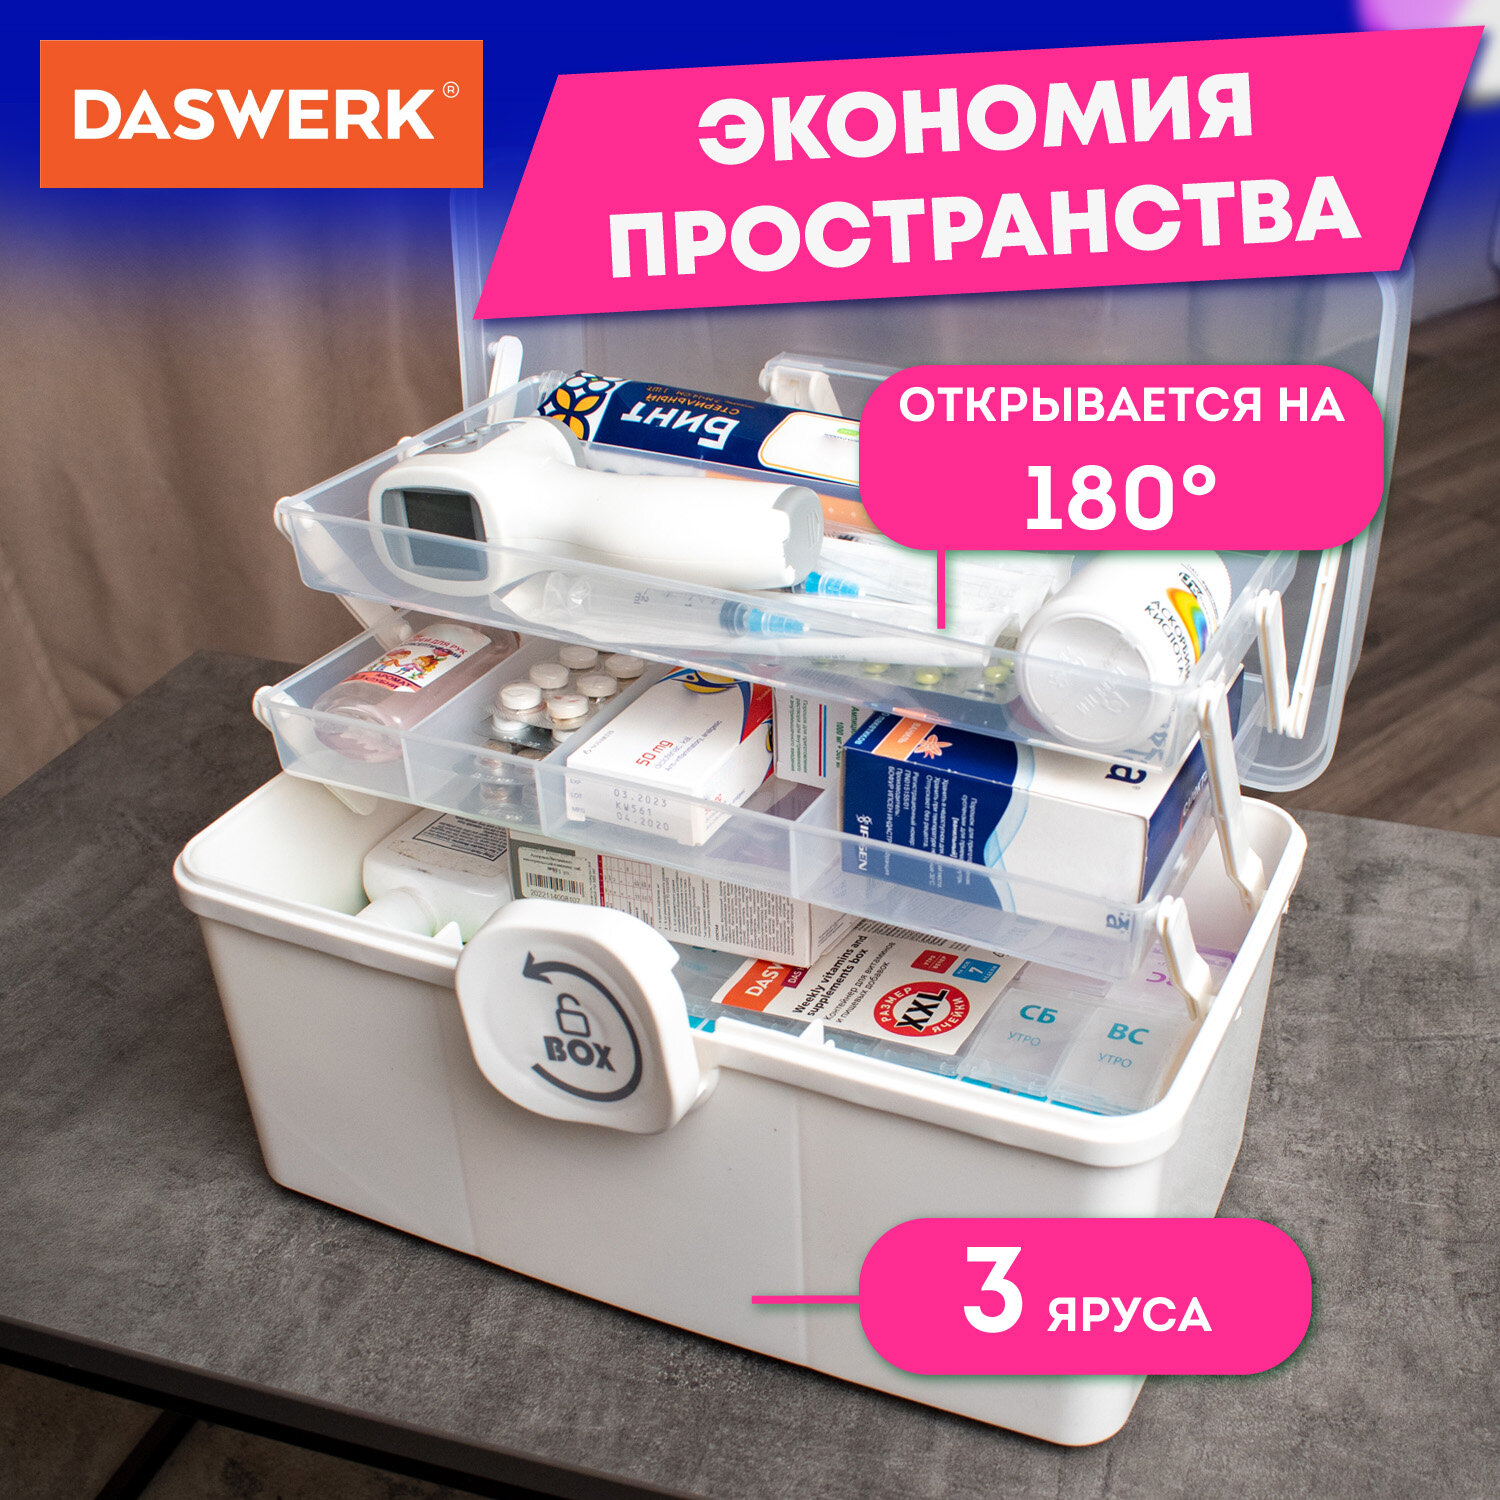 Аптечка DASWERK домашняя органайзер для хранения лекарств и витаминов - фото 3